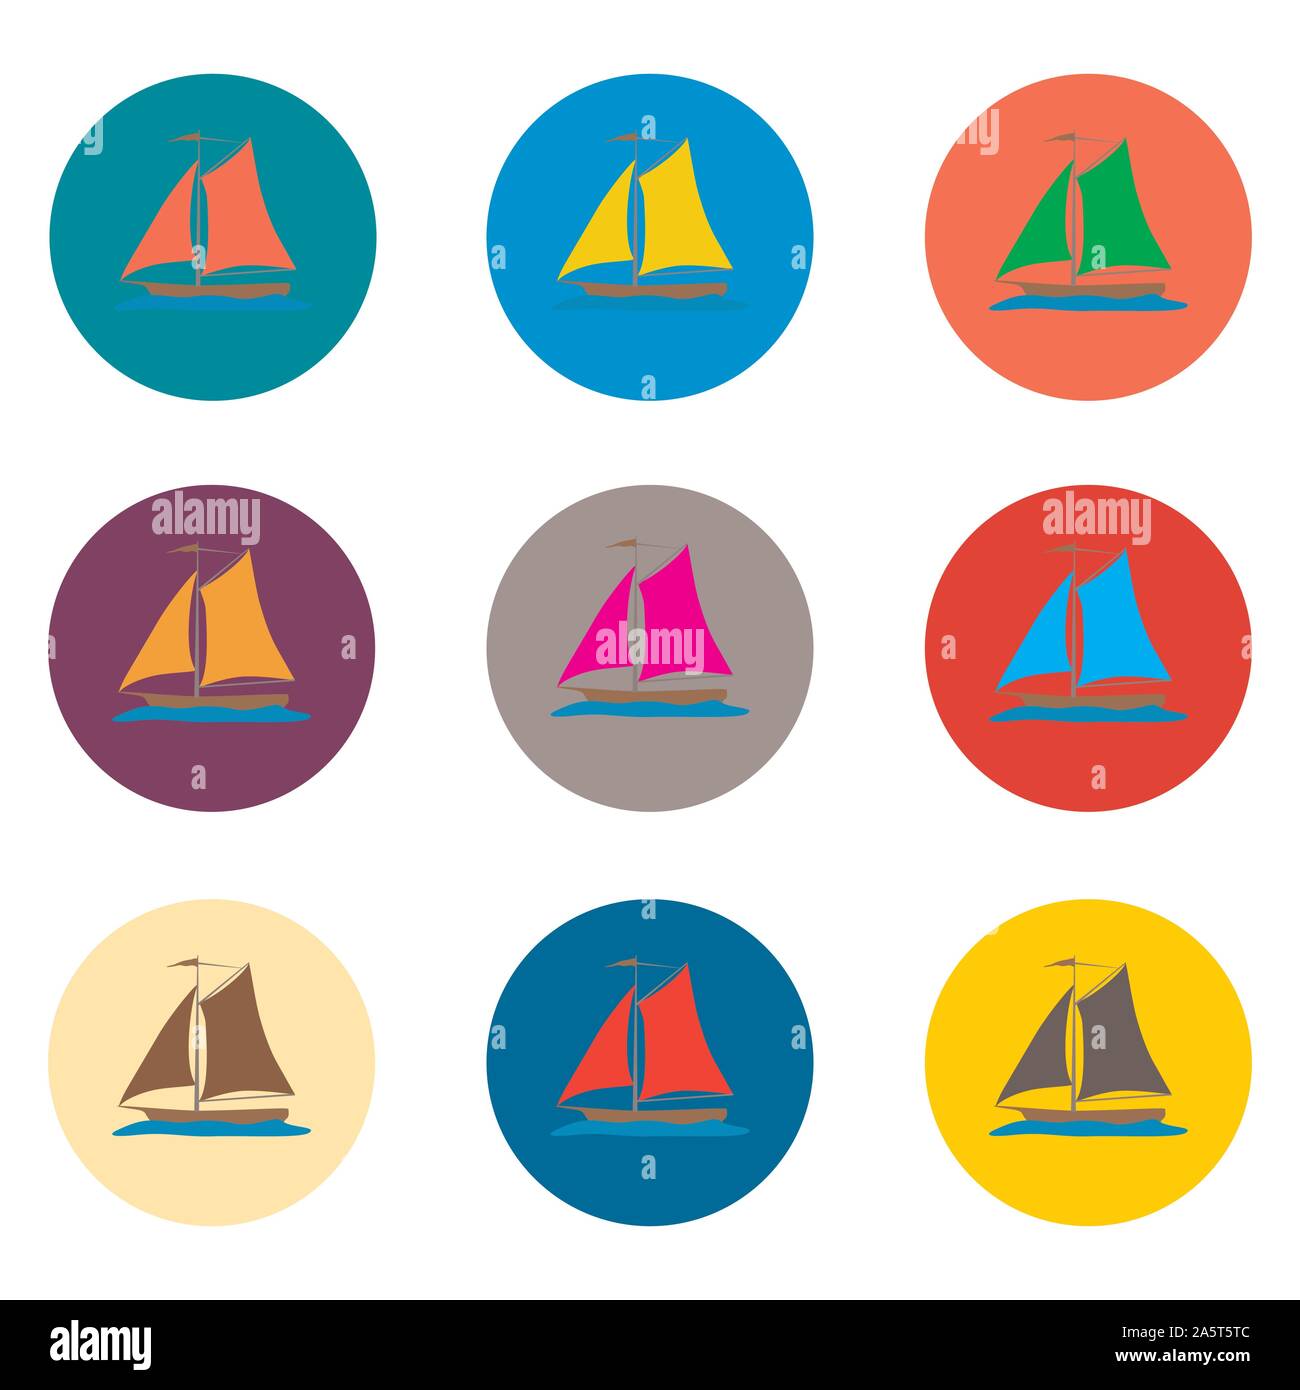 Vector Icons Abbildung Logo von Satz Symbole für Meer Schiff Yacht. Yachtcharter Muster bestehend aus flachen Design mit Elementen mobile Web Apps. Collectio Stock Vektor